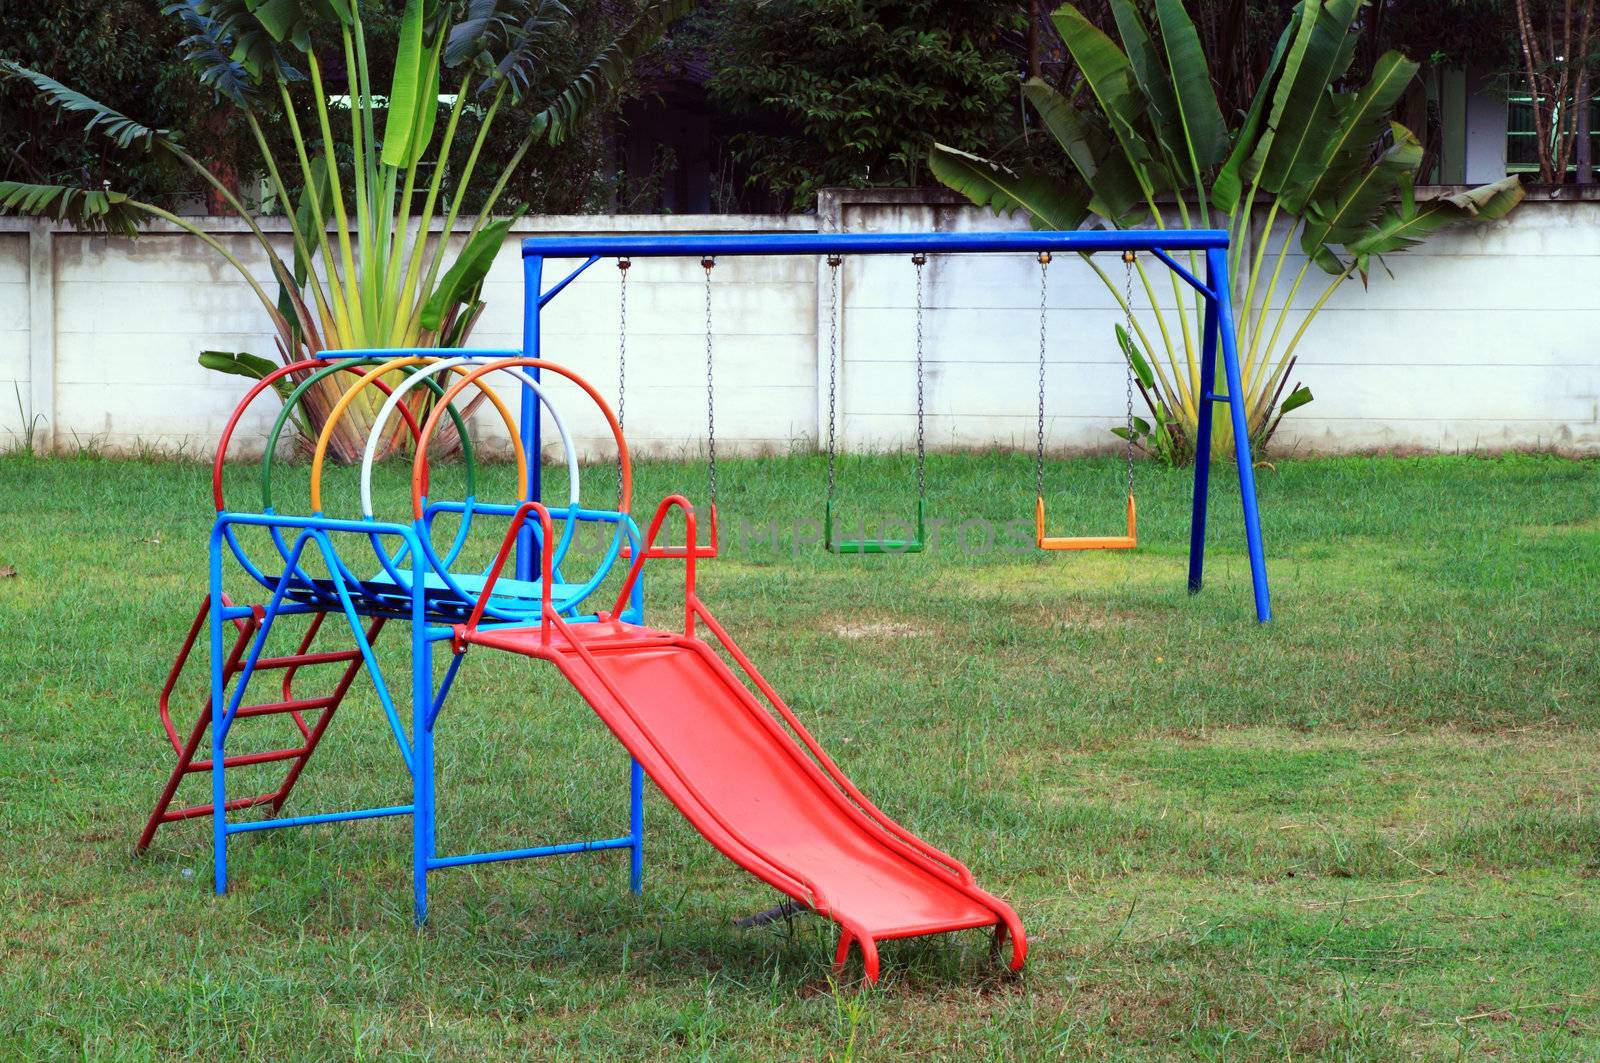 Playground without children